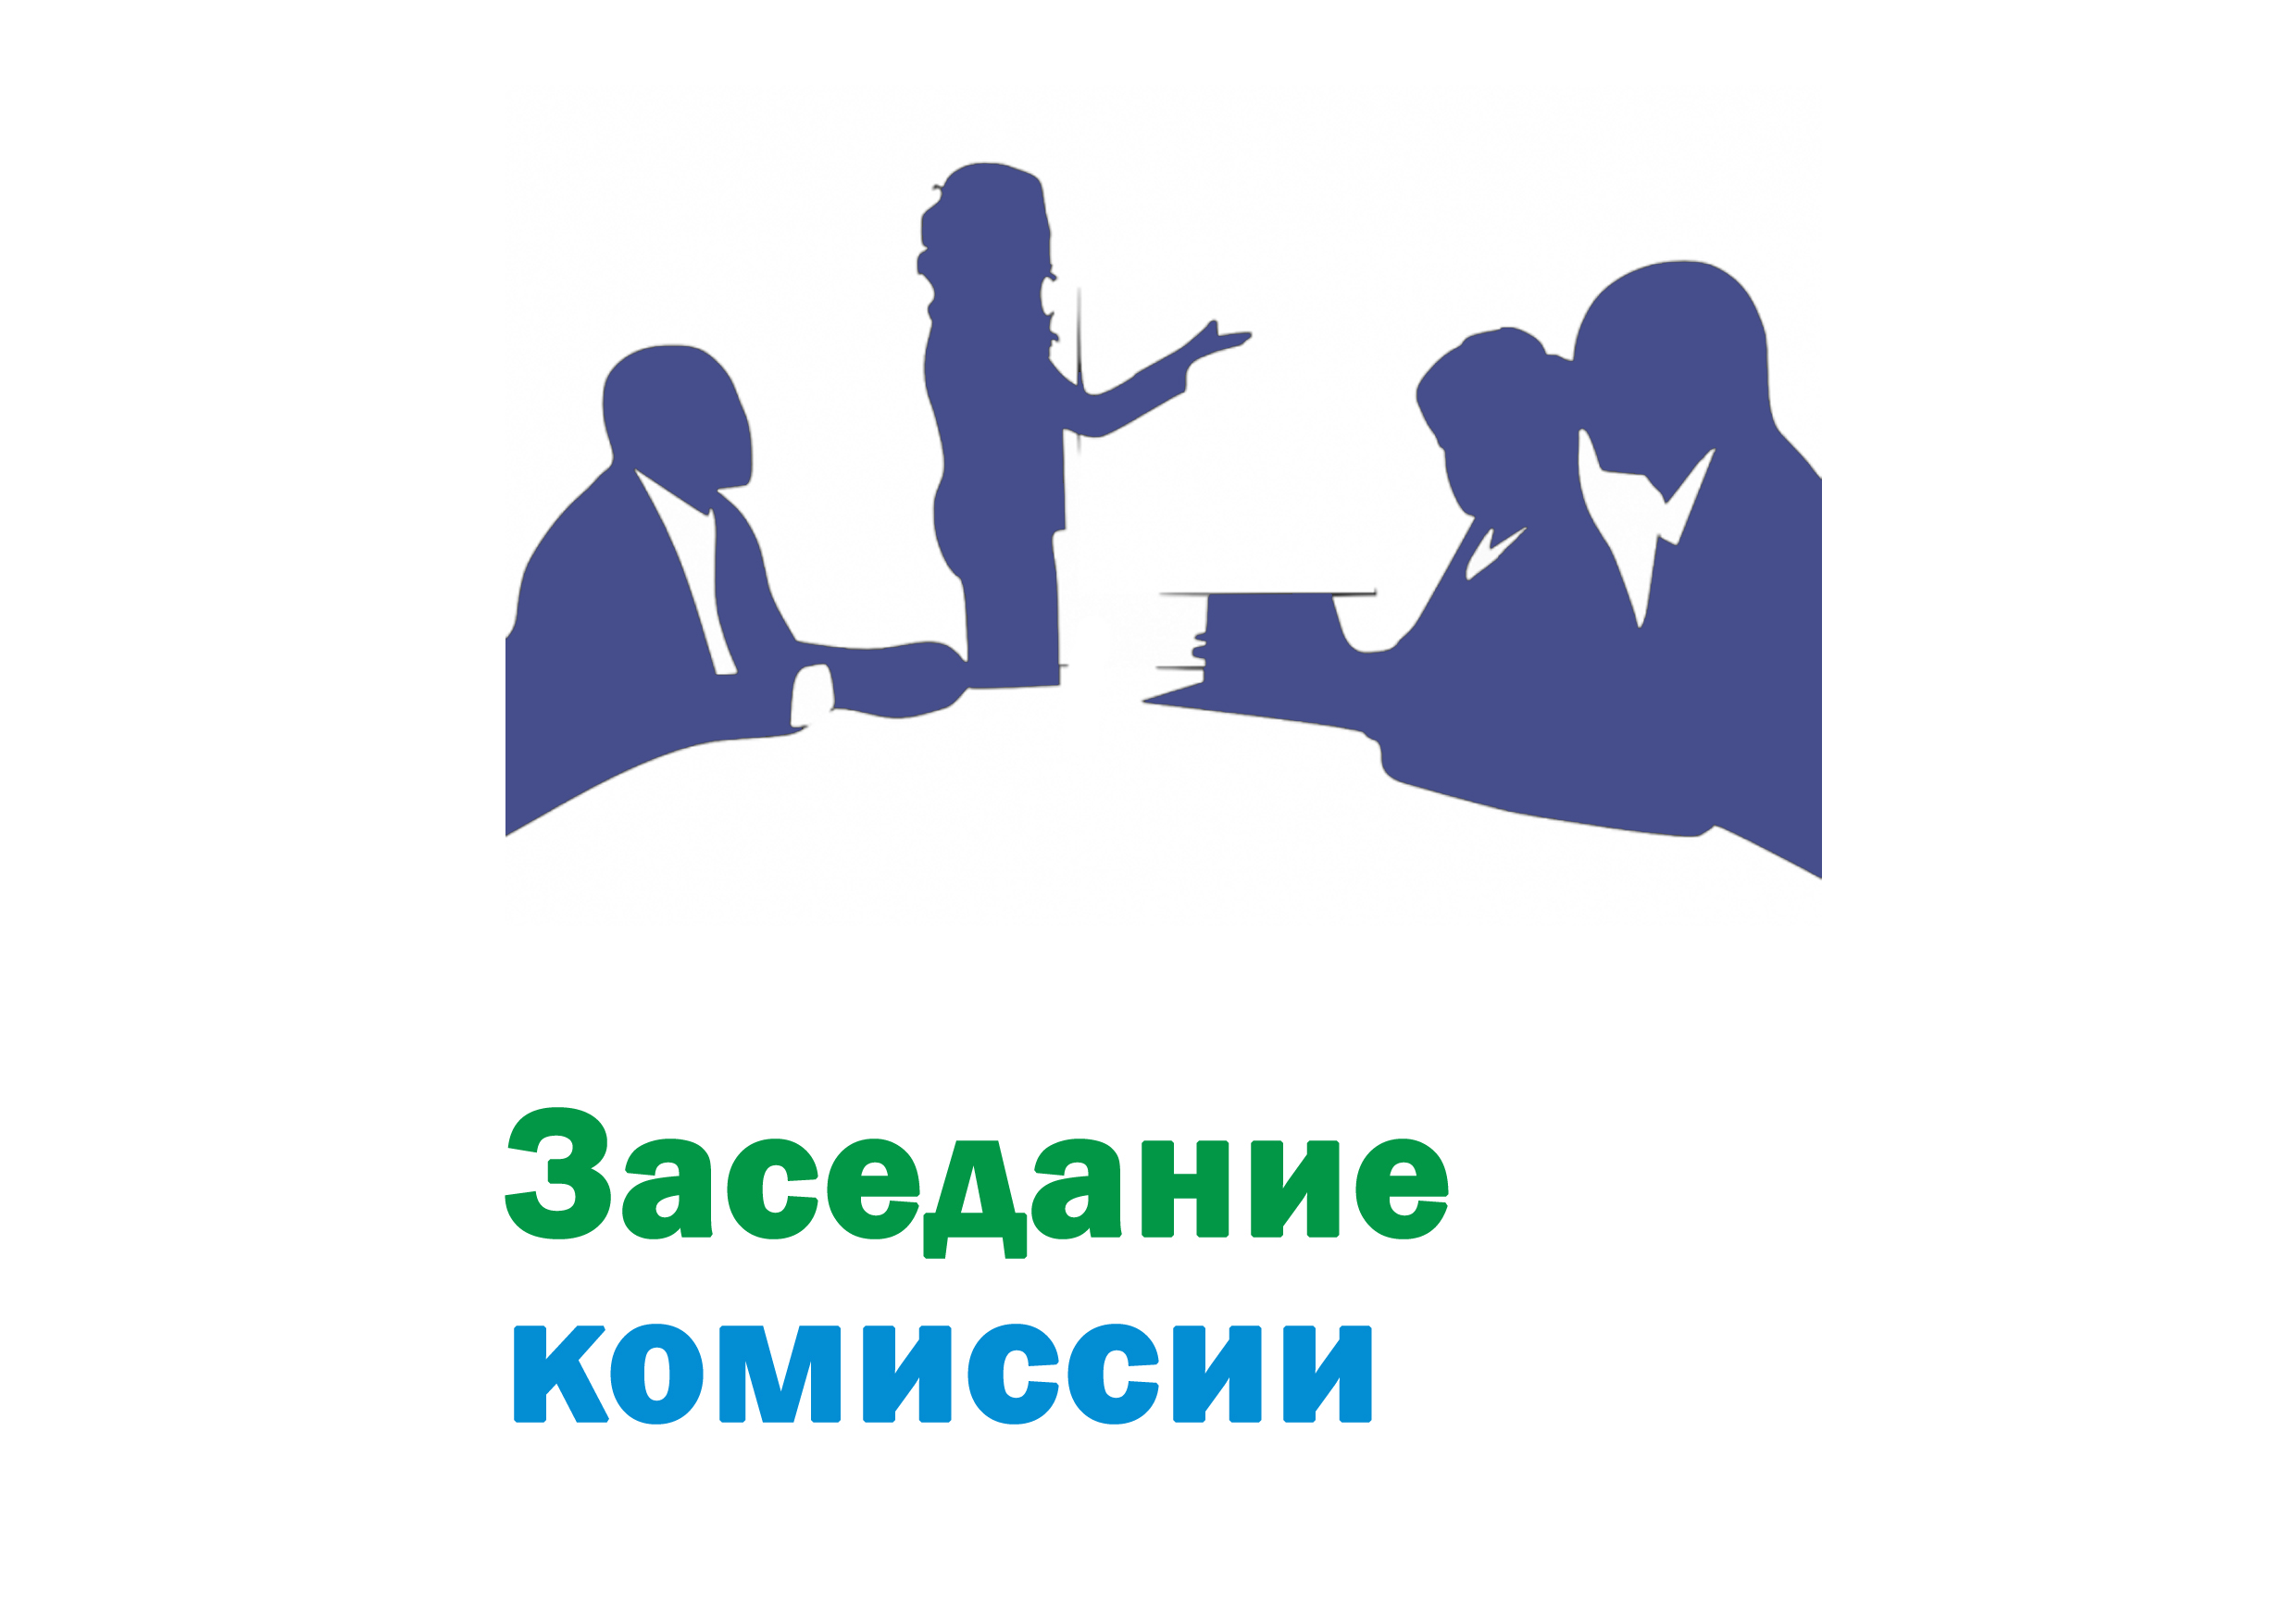 Заседание комиссии по обеспечению устойчивого развития экономики Даровского муниципального района Кировской области.